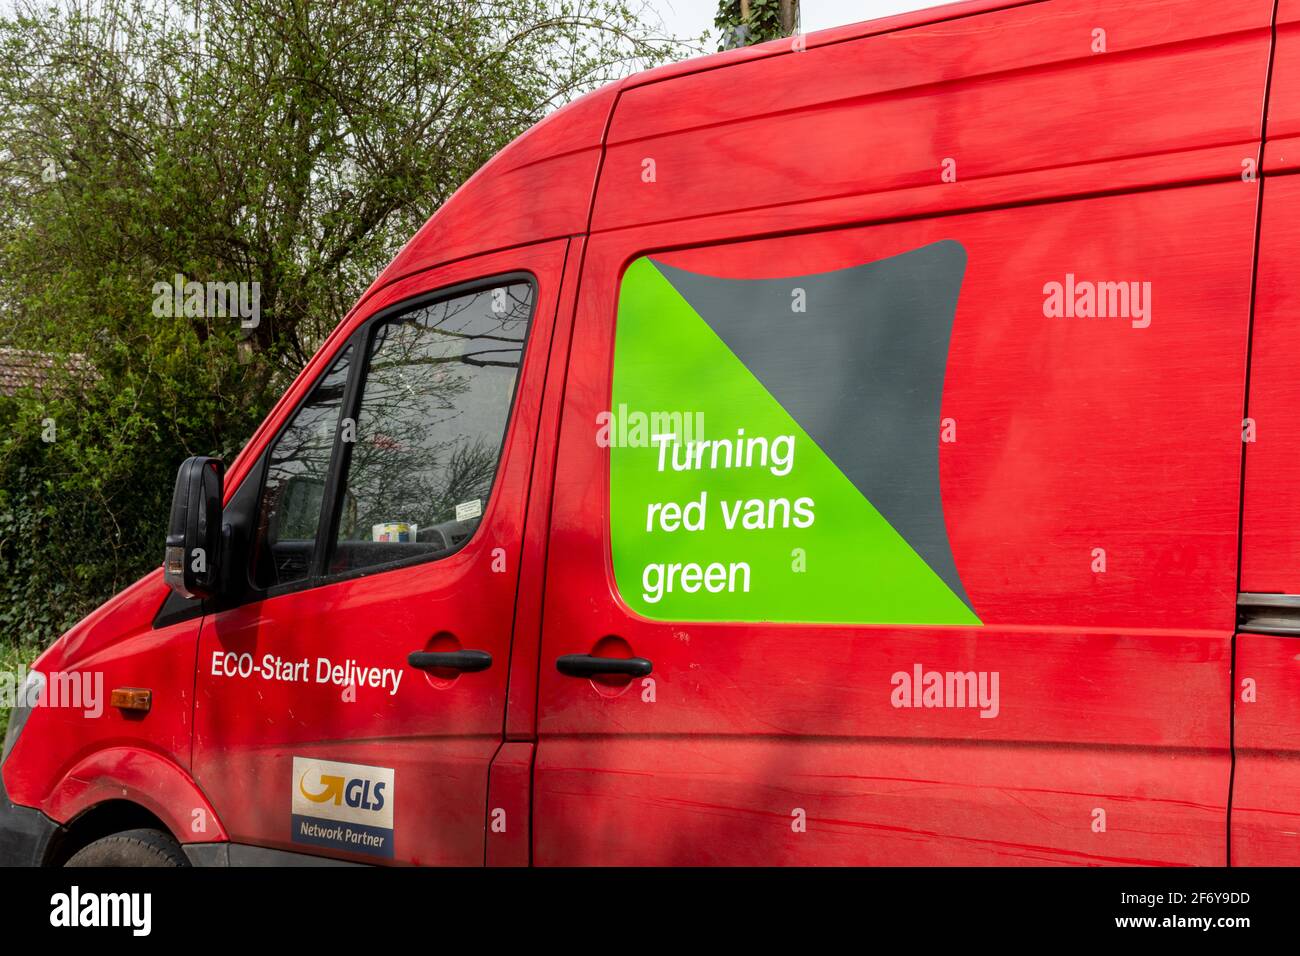 Parcelforce en todo el mundo red van con el eco-friendly lema que se convierte en rojo Vans verde en el lado, Reino Unido Foto de stock